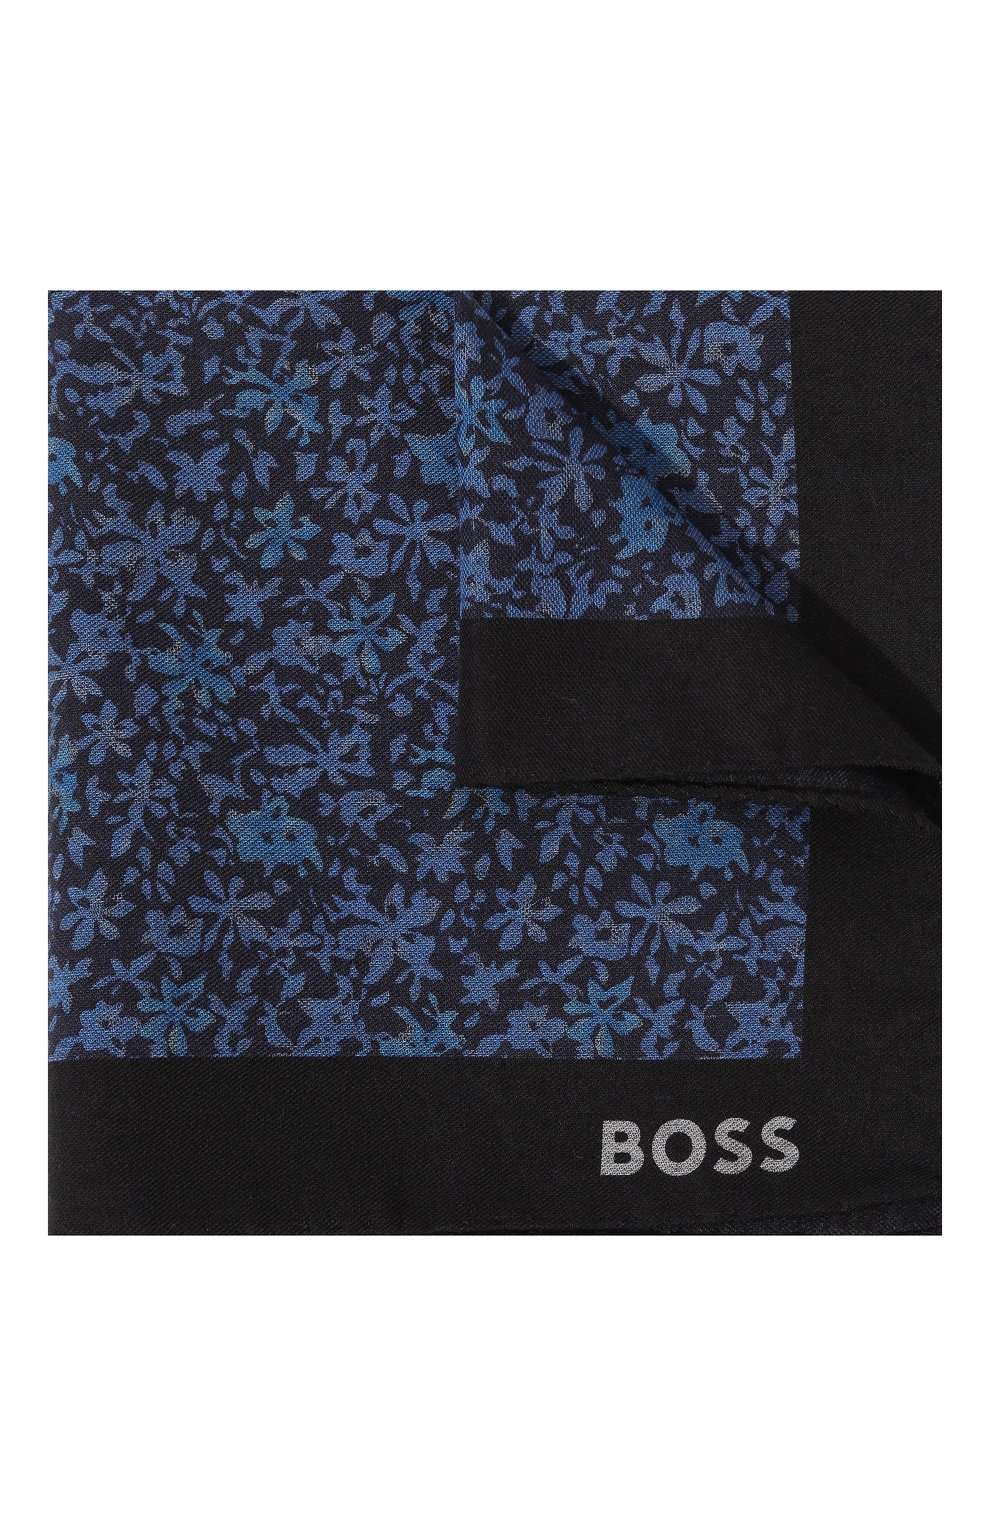 Мужской платок из хлопка и шерс ти BOSS синего цвета, арт. 50499597 | Фото 1 (Материал: Текстиль, Шерсть, Хлопок)